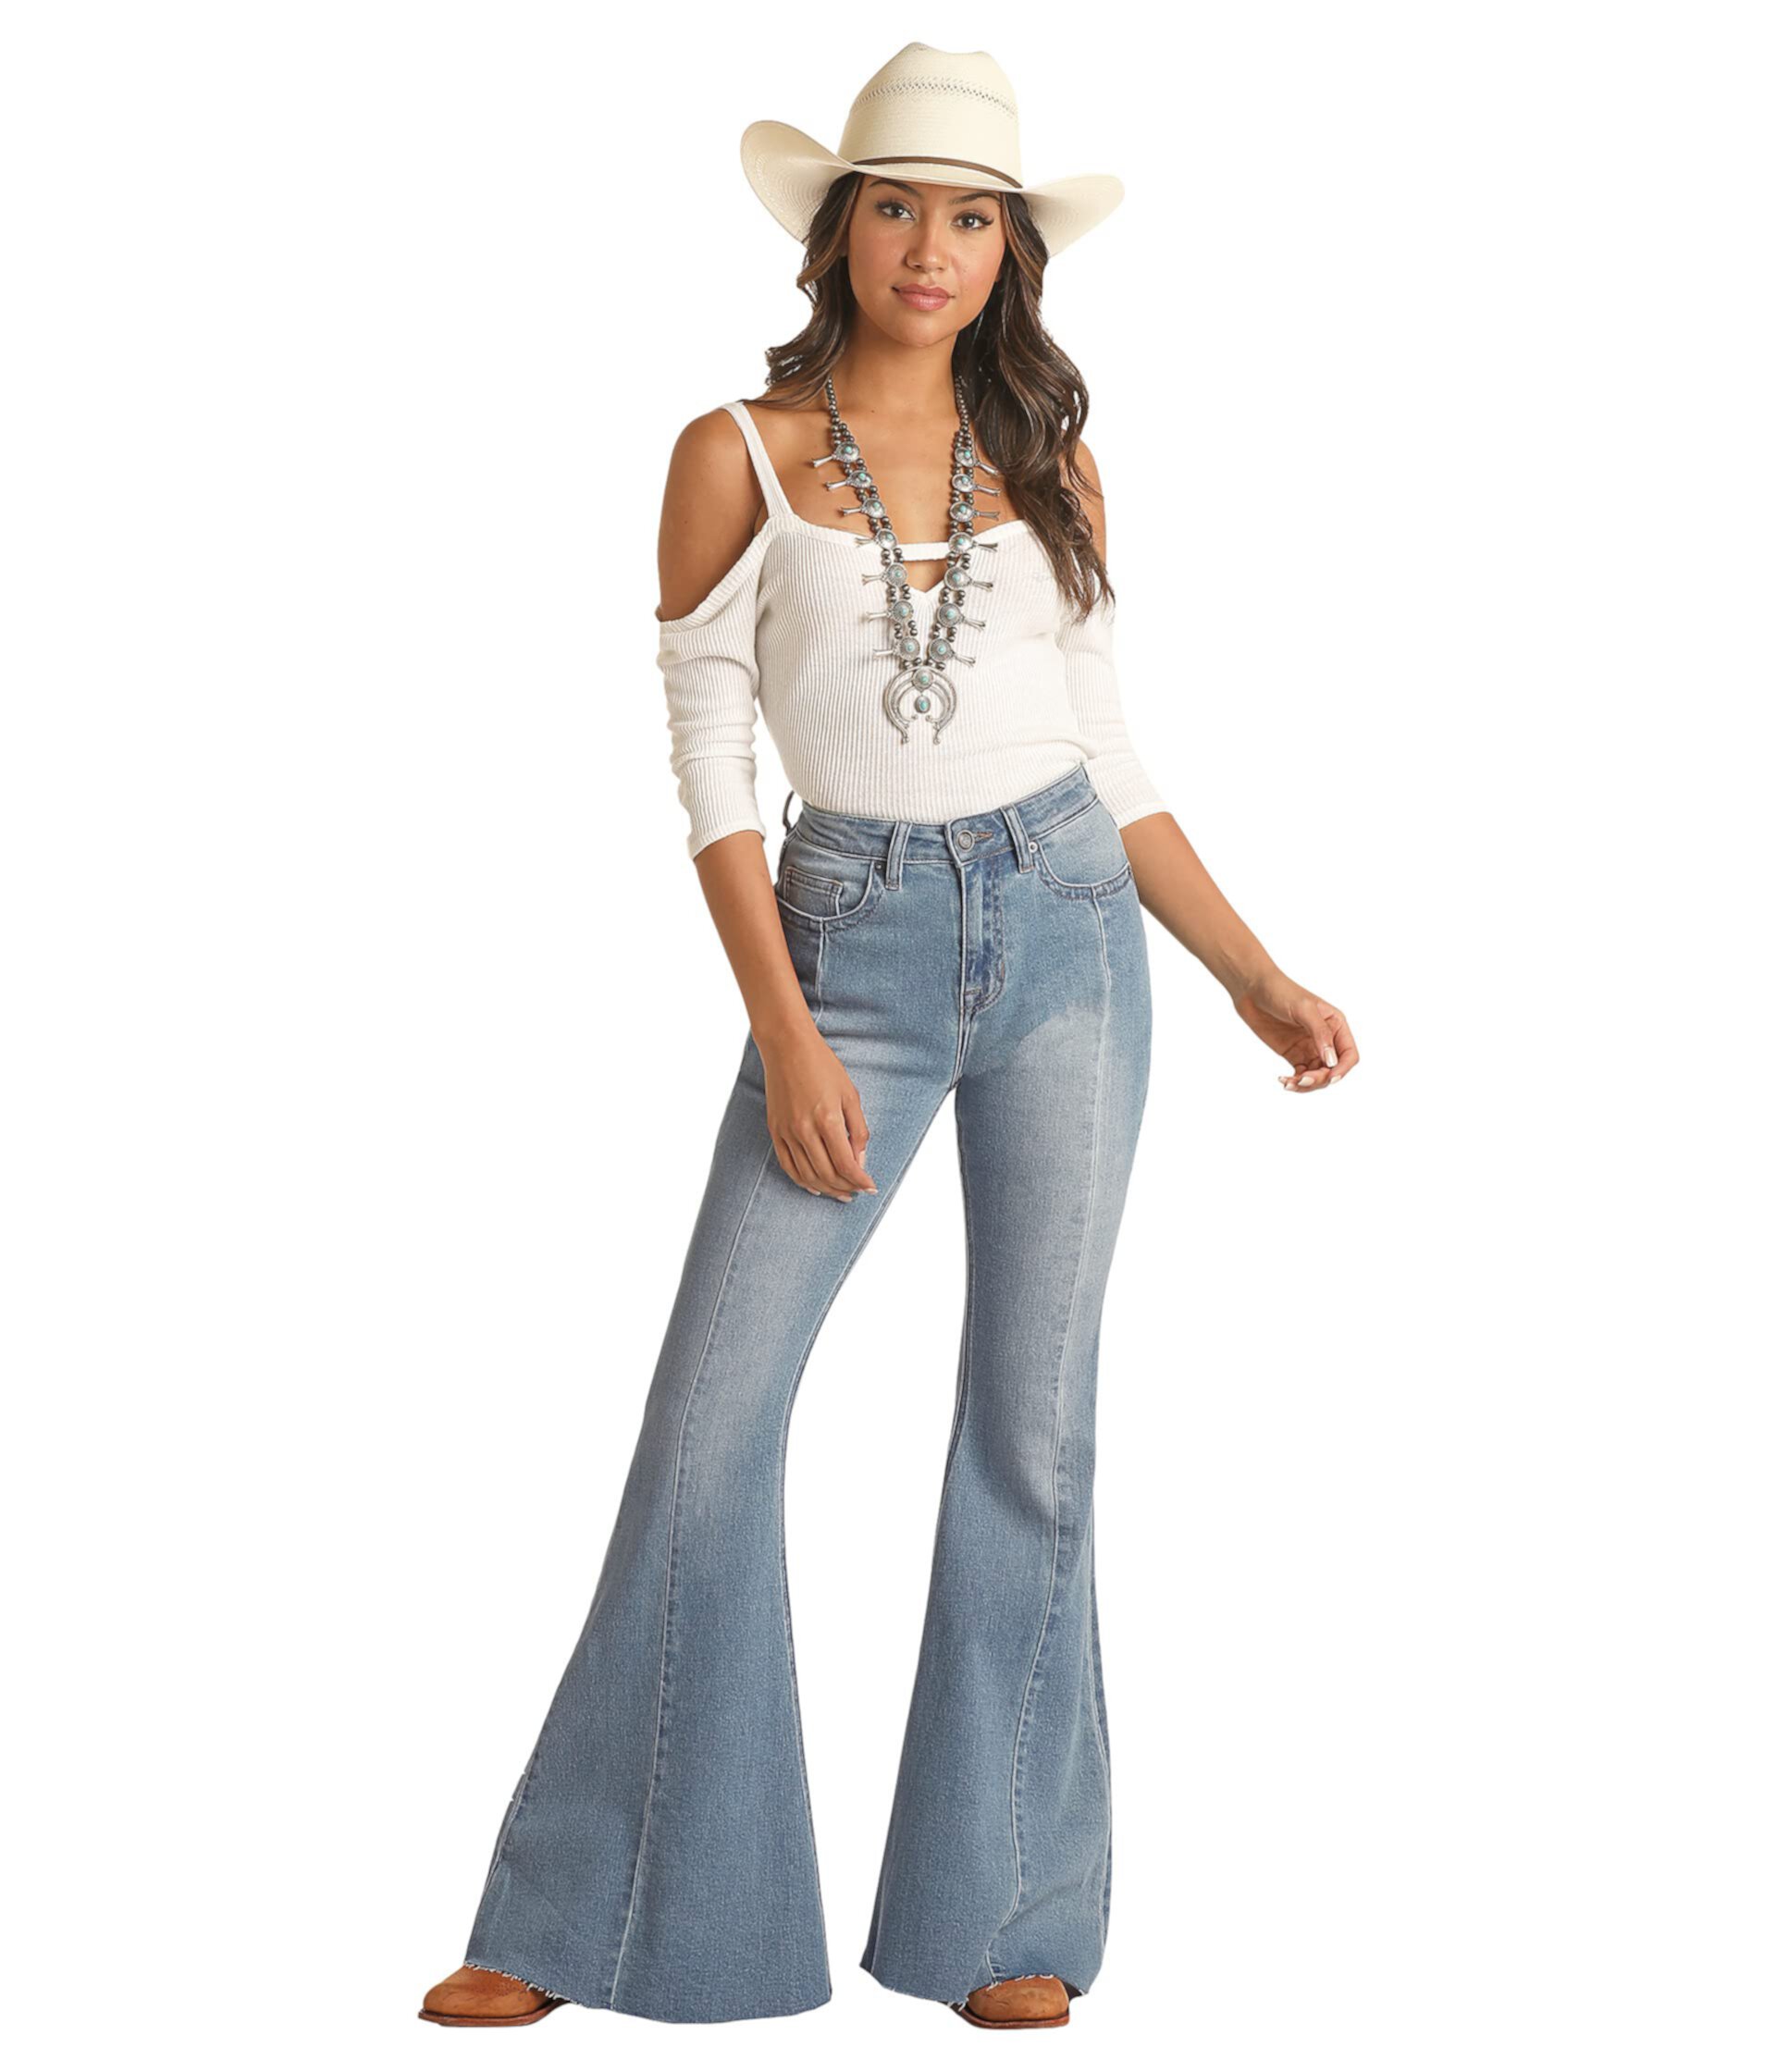 Светлые джинсы клеш с высокой посадкой и эффектом потертости RRWD7HRZTT Rock and Roll Cowgirl